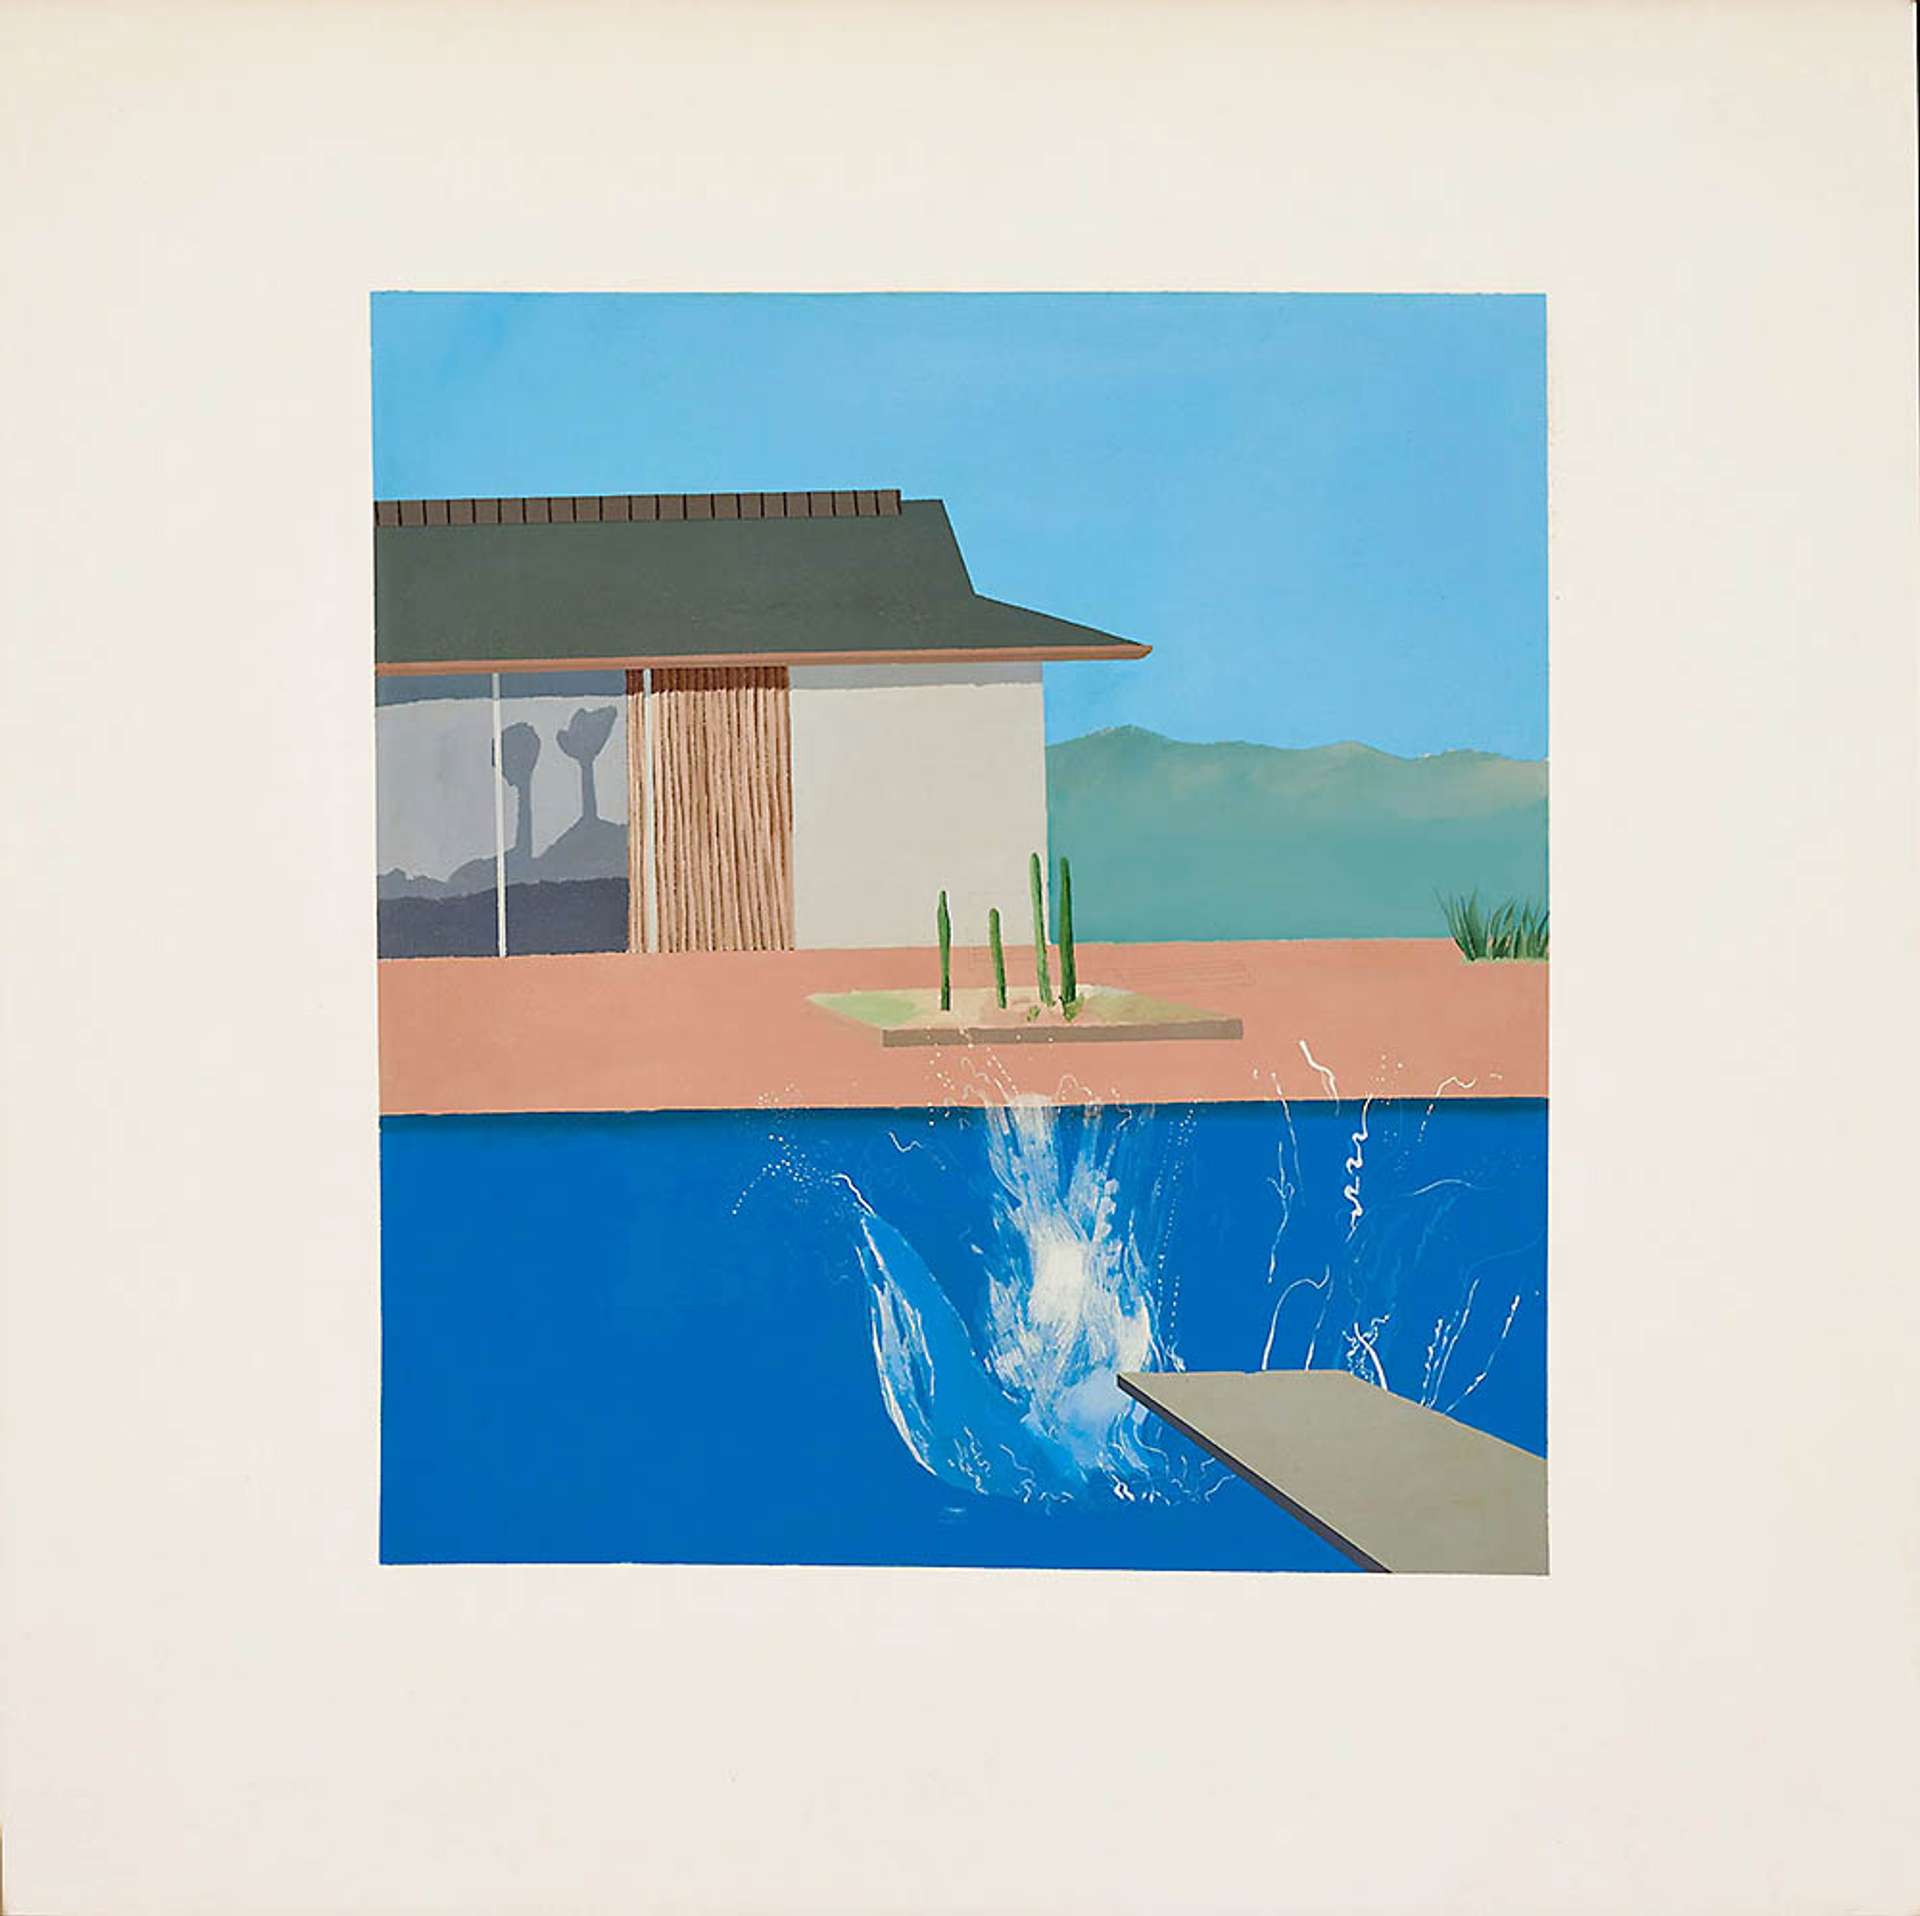 The Splash. David Hockney, 1967.